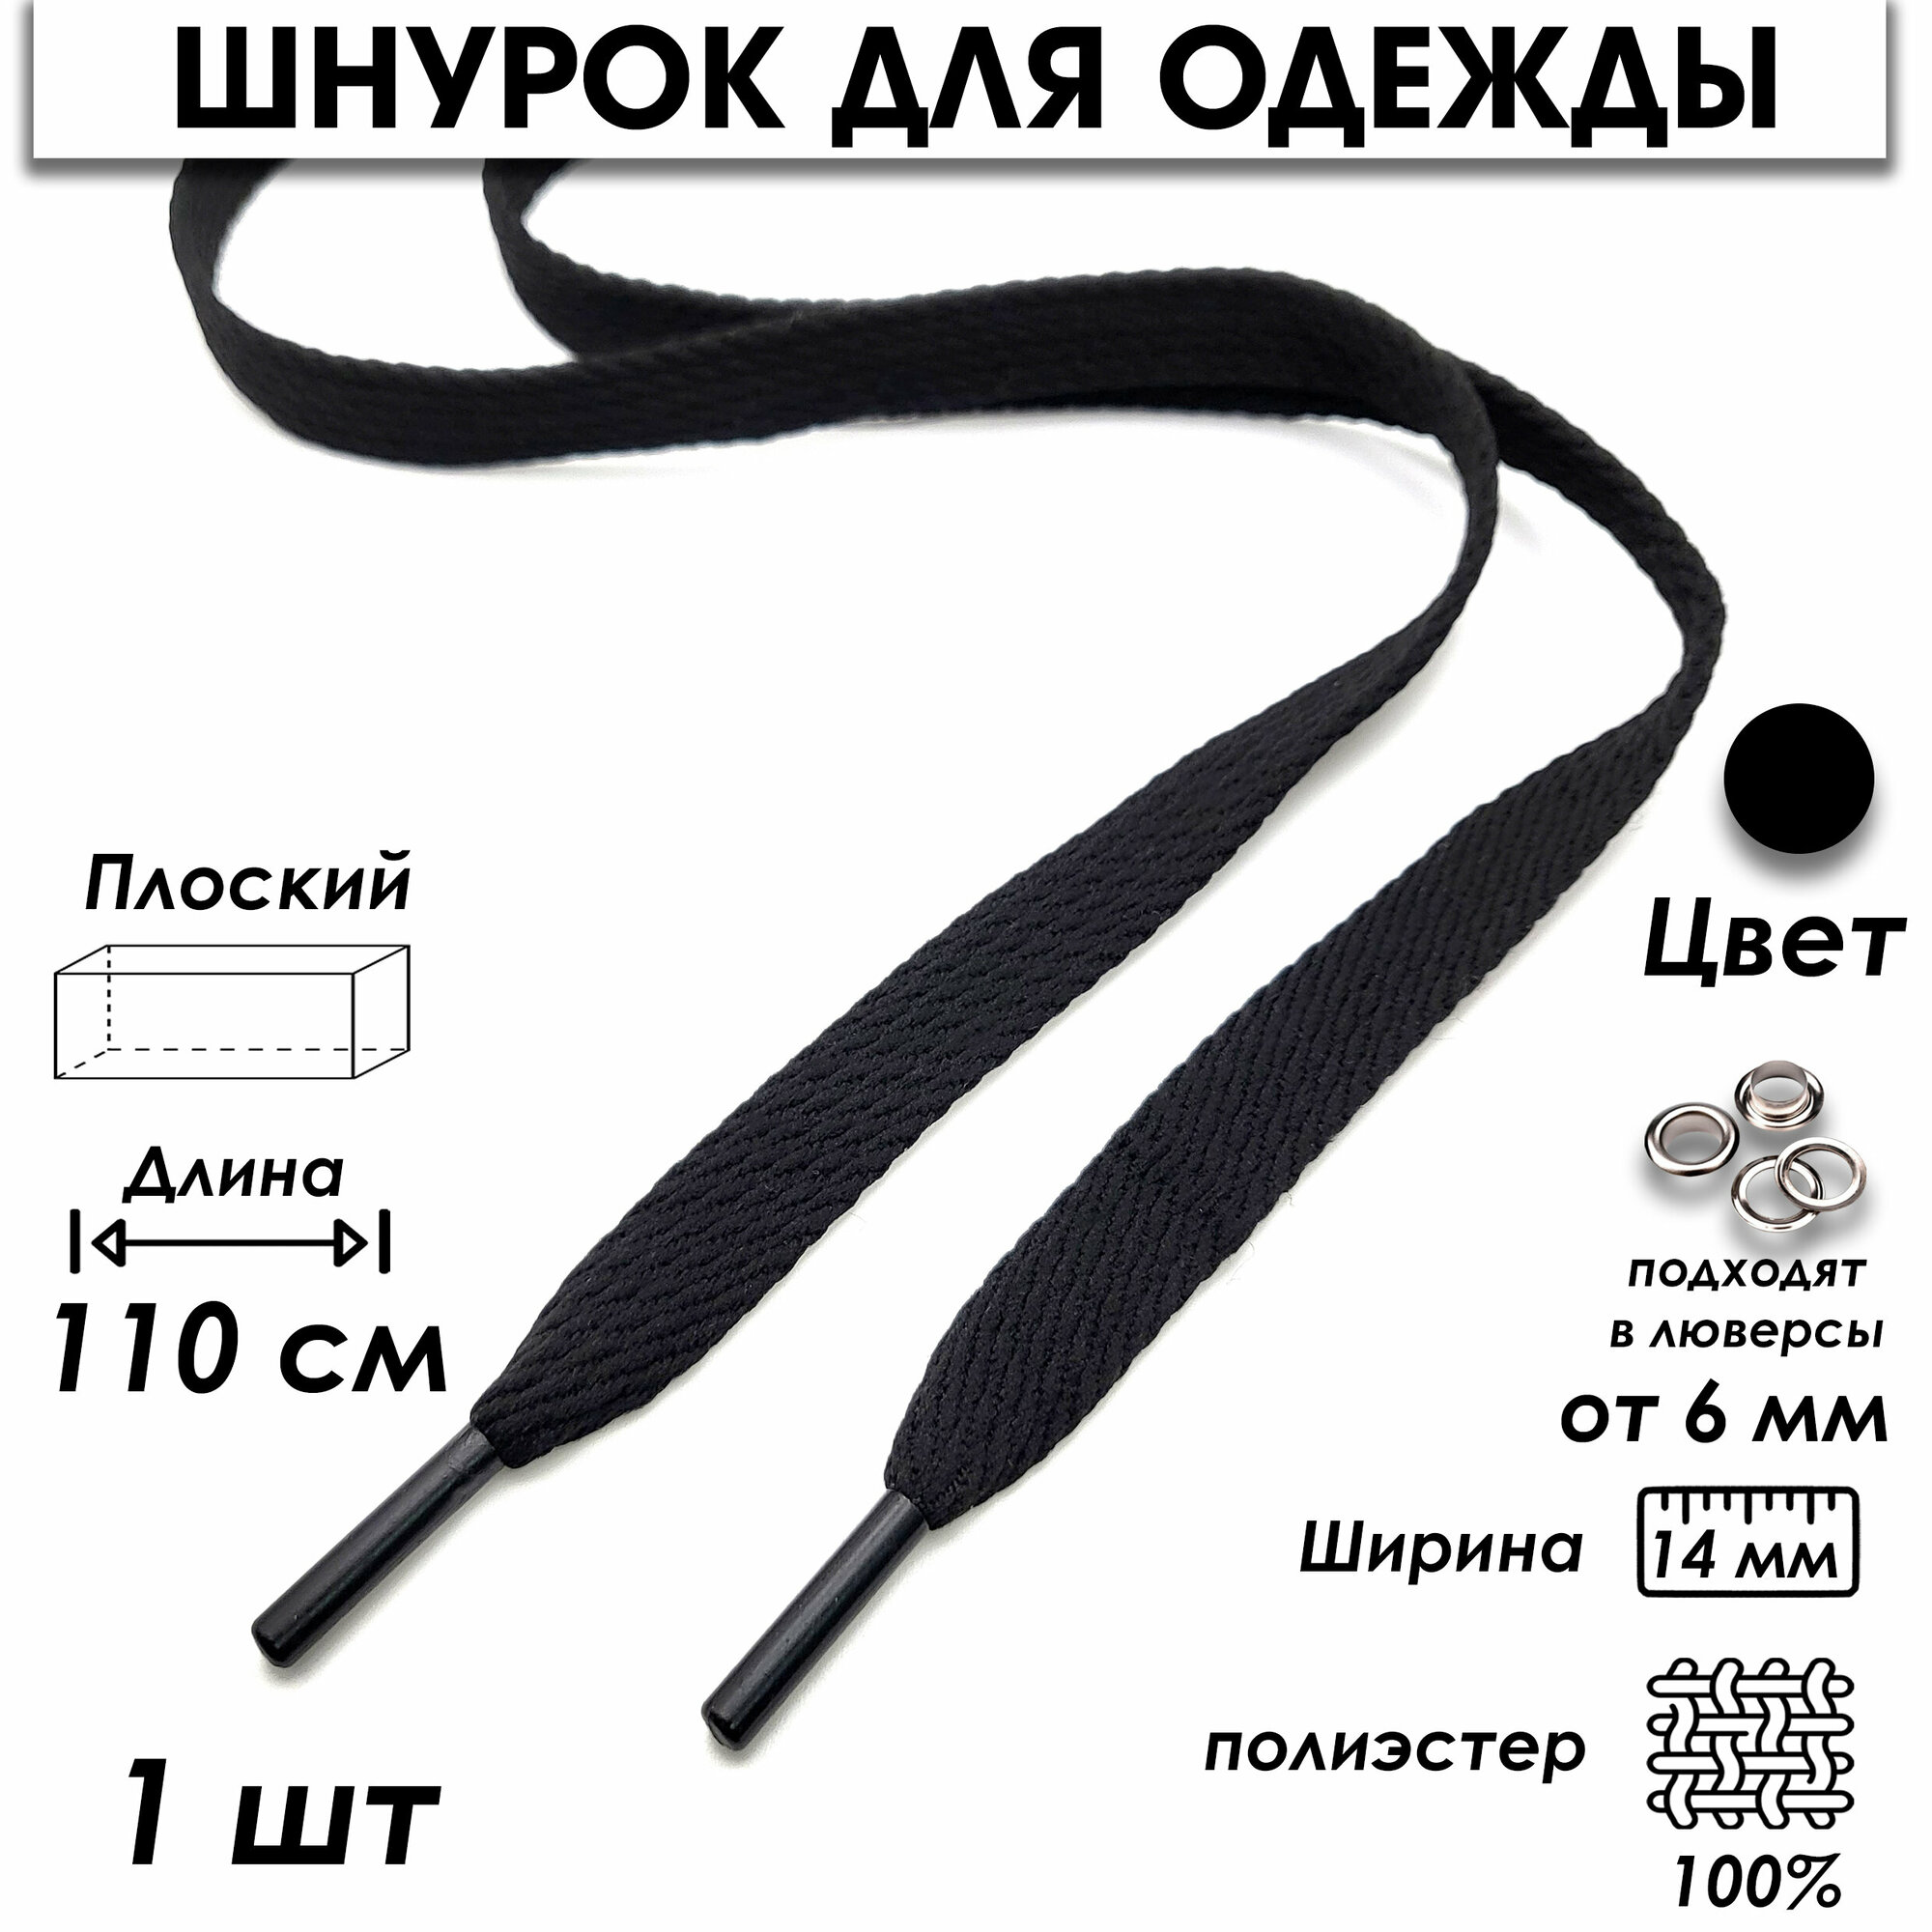 Шнурок для одежды плоский 110 см 1 шт. черный